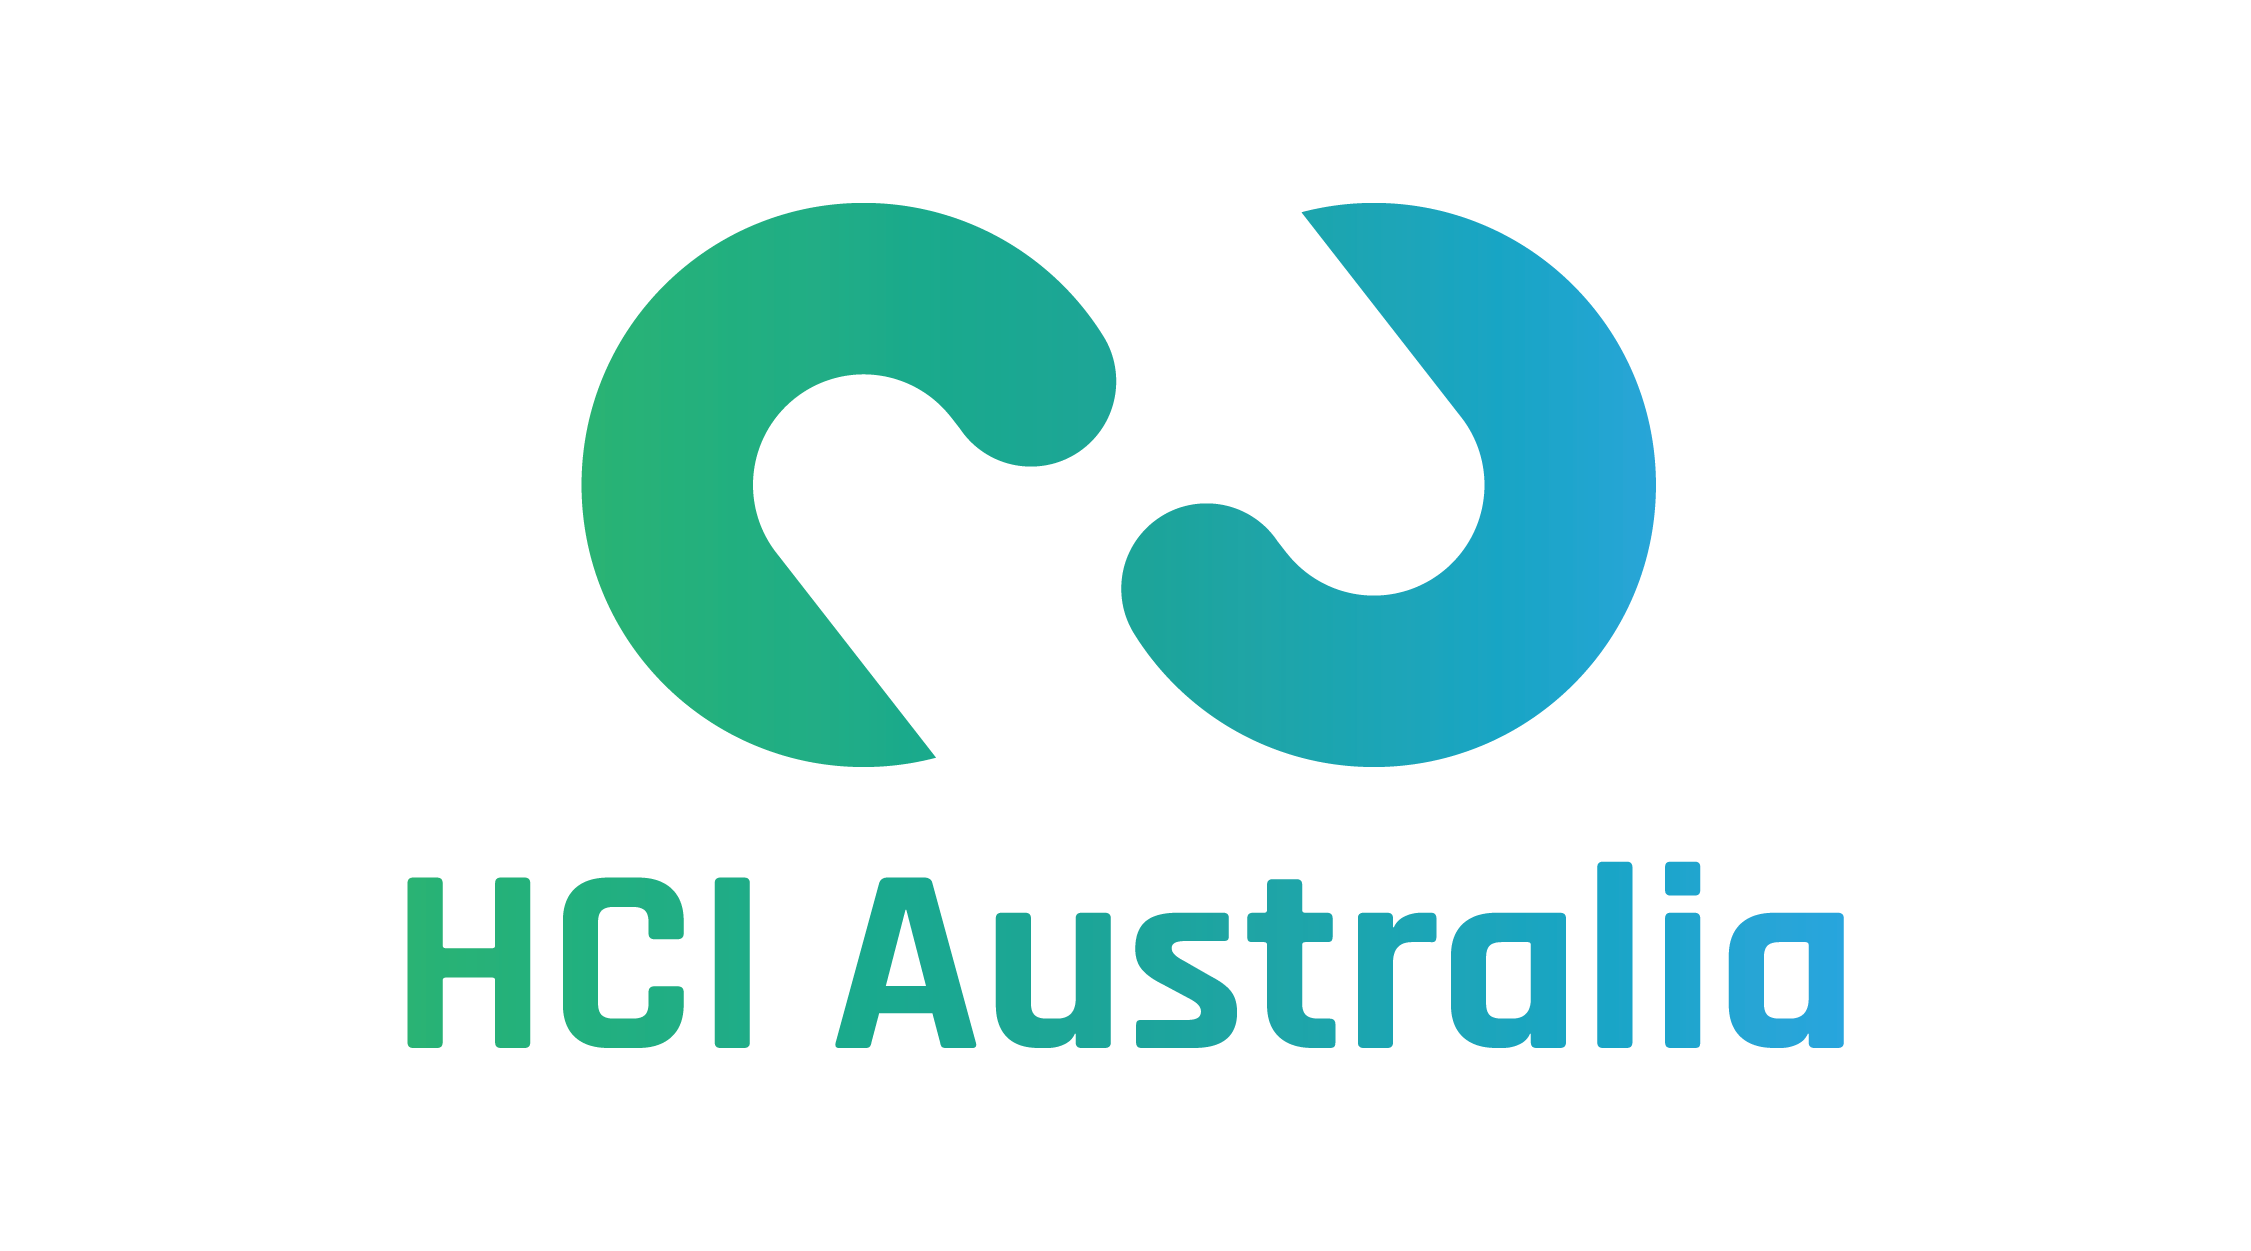 HCI Australia - Australia